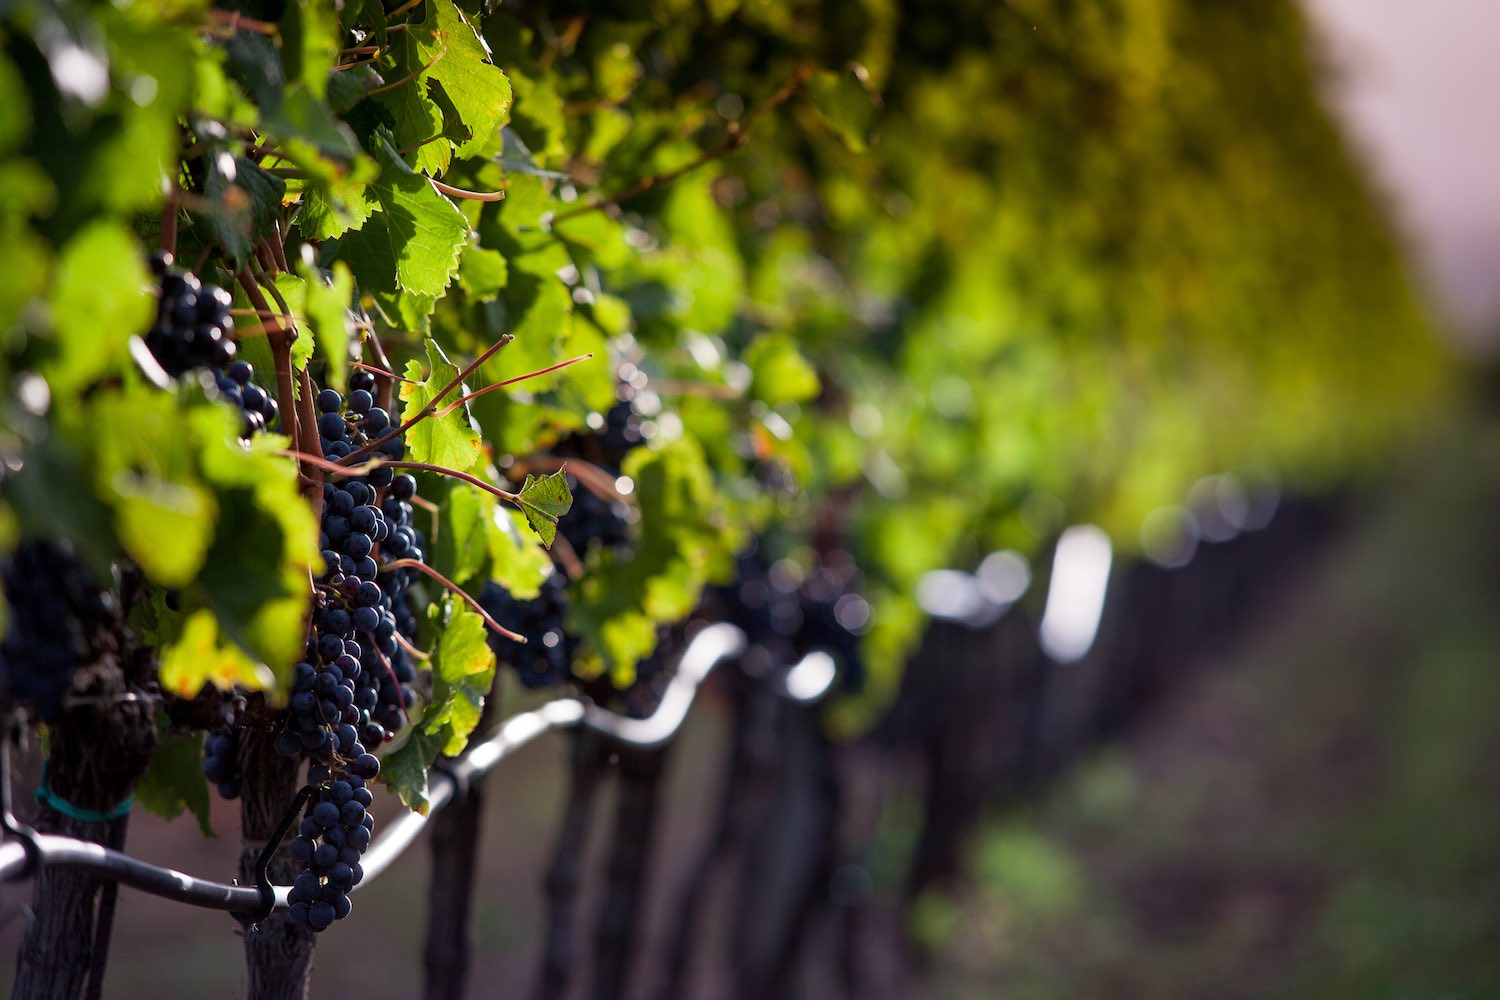 Il Sassicaia 2015 è stato eletto miglior vino del mondo dal Wine Spectator, confermando il primato toscano nella scena dell'enologia mondiale